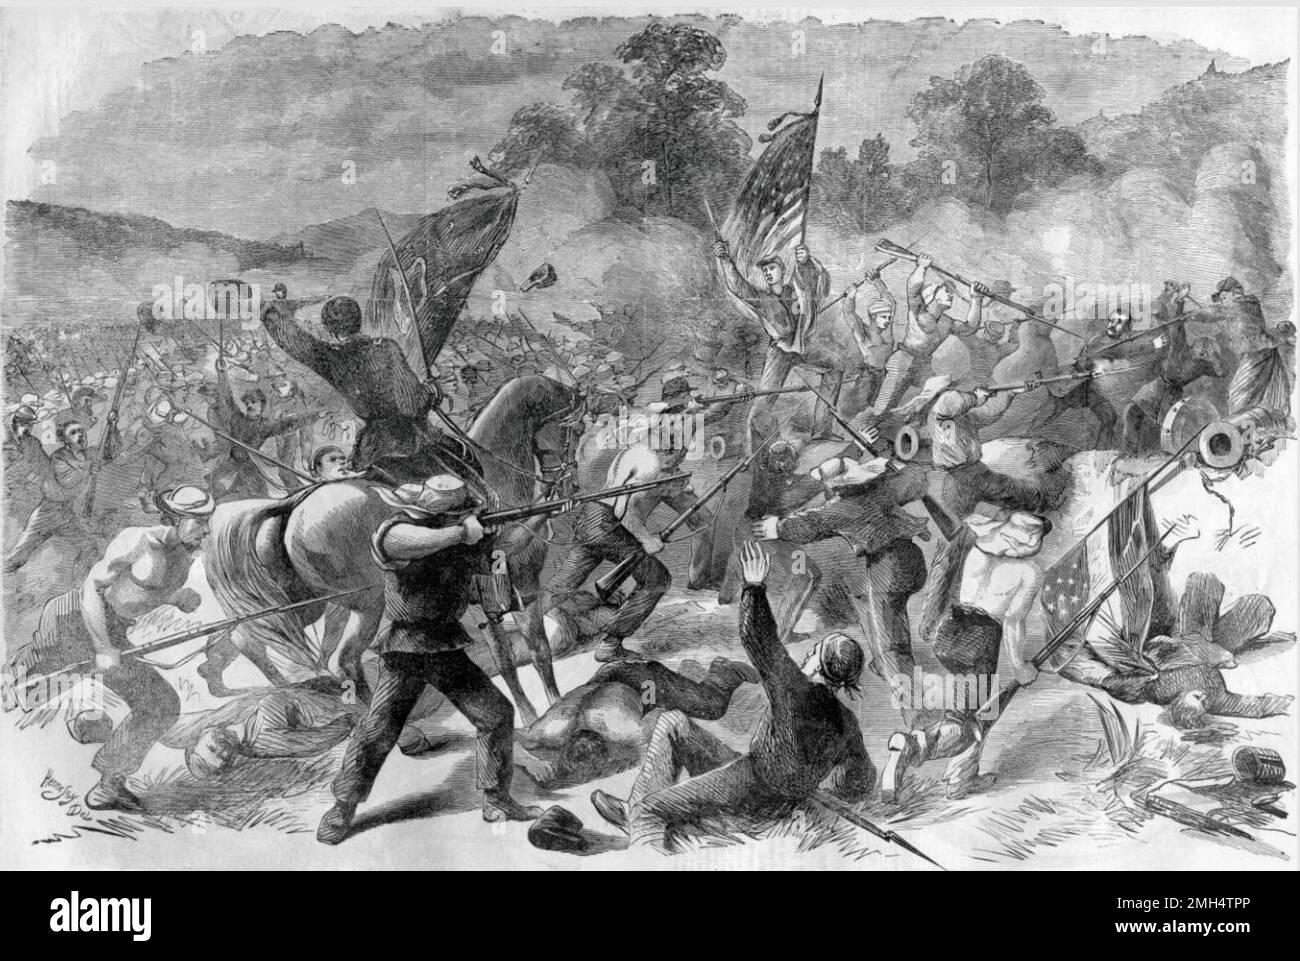 Esta imagen muestra una carga del 69 Regimiento, milicia del estado de Nueva York, sobre Una batería rebelde en la Batalla de Bull Run. La Primera Batalla de Bull Run (el nombre utilizado por las fuerzas de la Unión), también conocida como la Batalla del Primer Manassas fue la primera gran batalla entre las fuerzas unionistas y confederadas durante la Guerra Civil Americana. Fue combatido el 21 de julio de 1861 en Virginia Occidental. Fue ganado por las fuerzas confederadas bajo Joseph Johnston y PGT Beauregard. Fue en esta batalla que Thomas Jackson obtuvo su conocido (y excelente) apodo Stonewall Kackson. Foto de stock